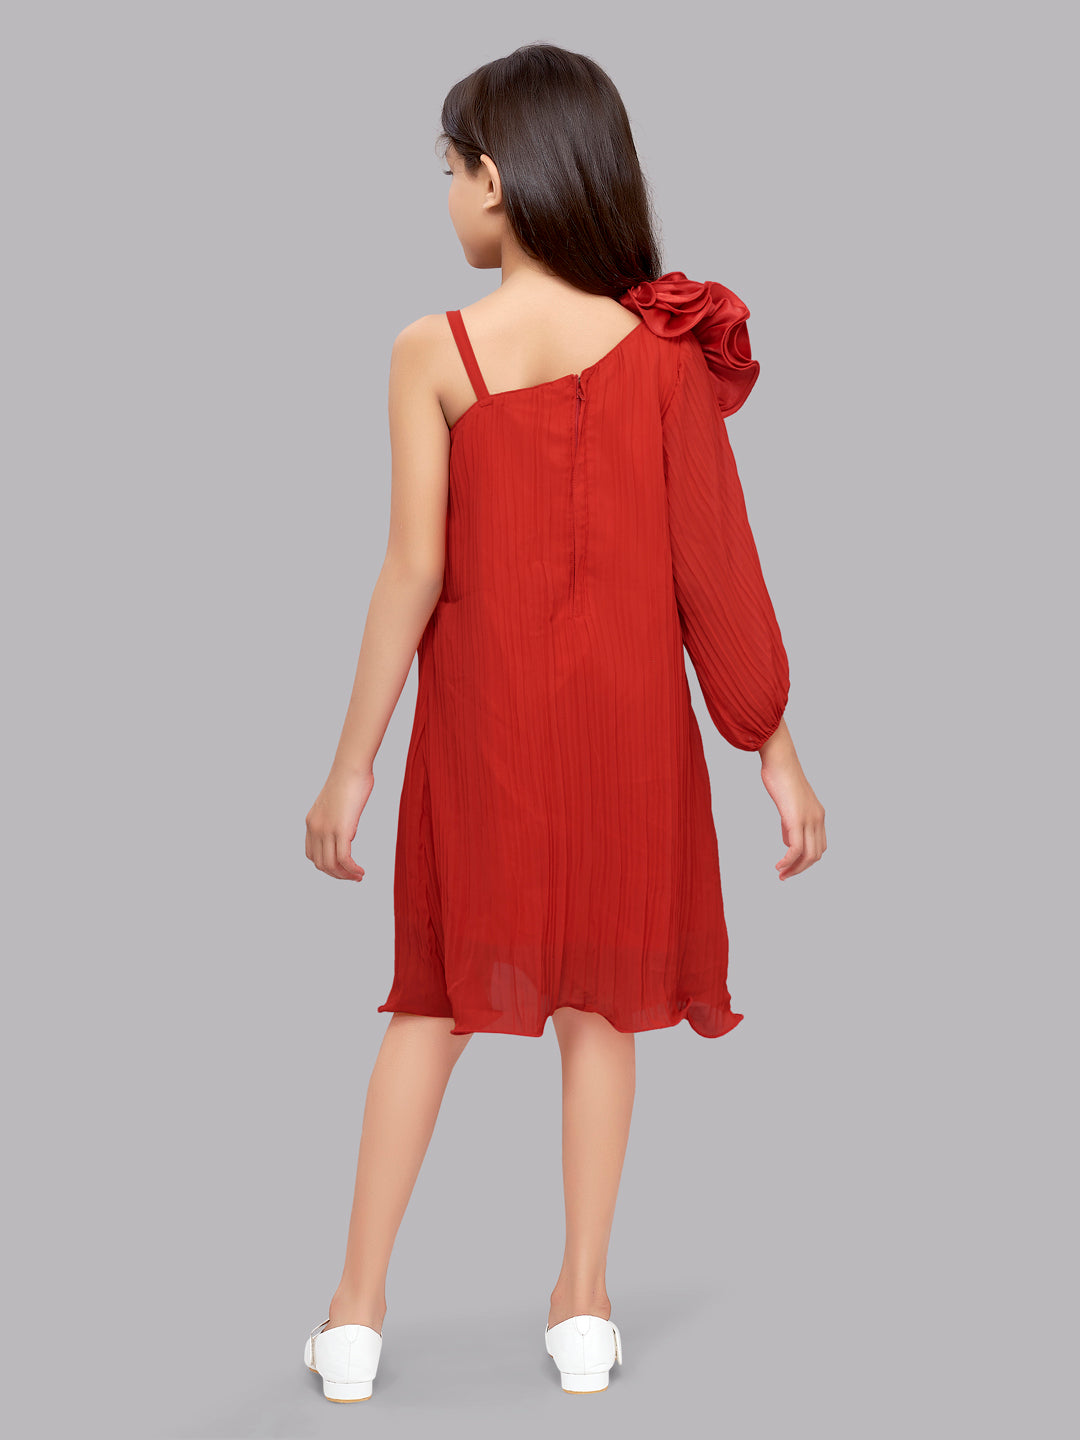 One Shoulder Red Aline Dress